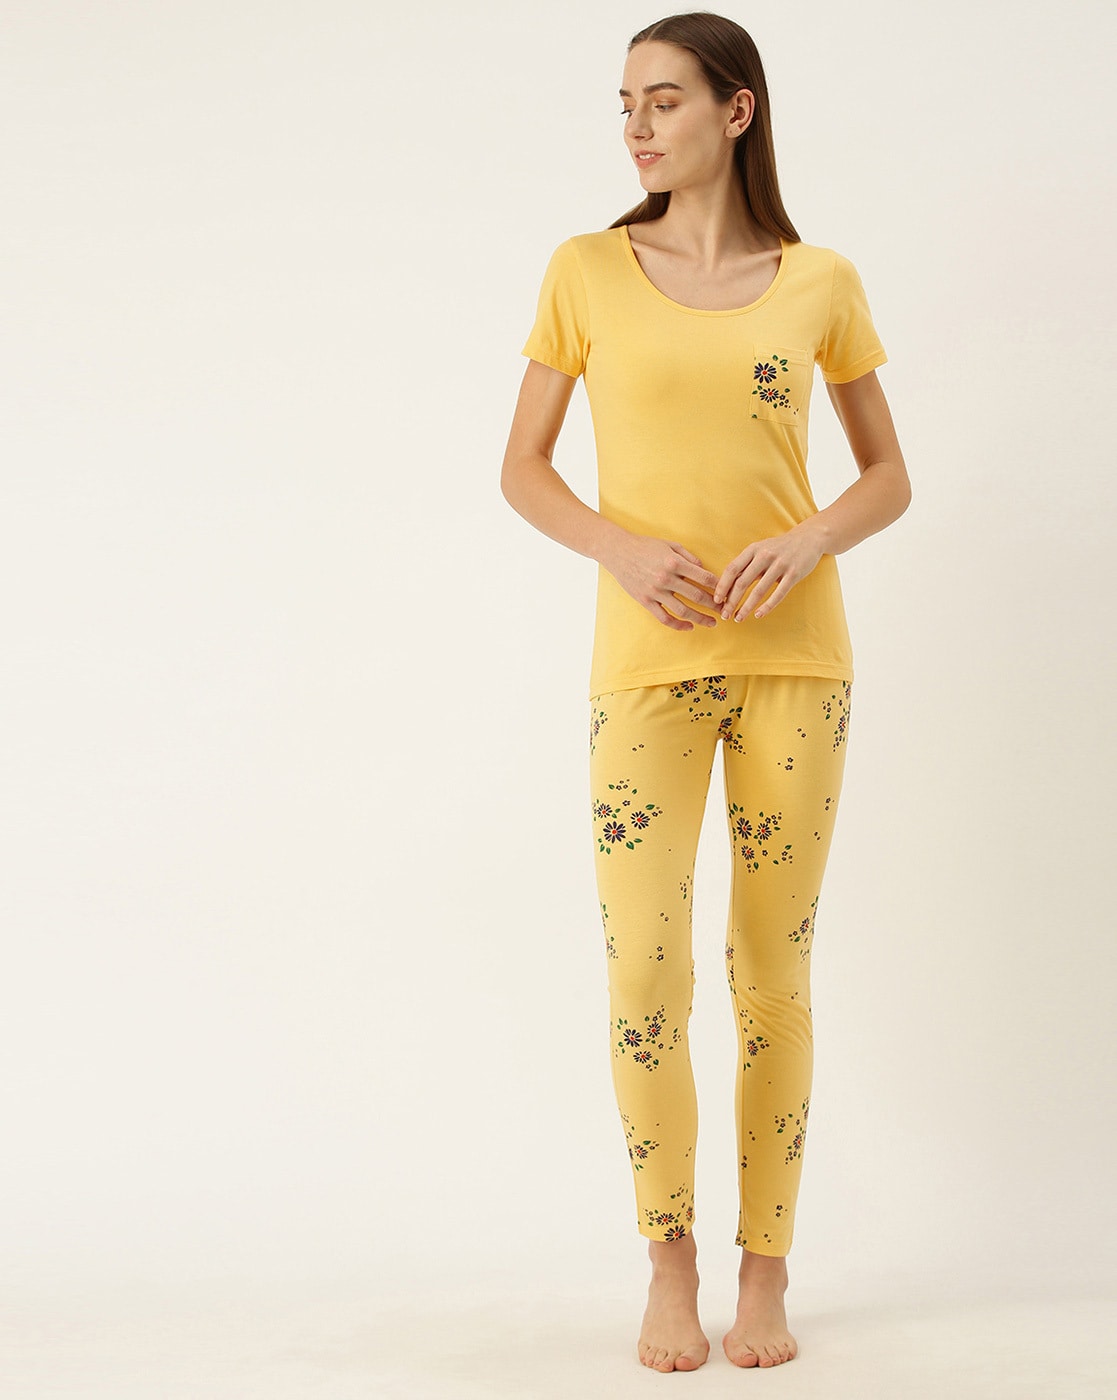 Dreams & Co. Women's Plus Size 2-Piece Pj Legging Set Pajamas - 1X, Plum  Burst Penguins Purple at Amazon Women's Clothing store